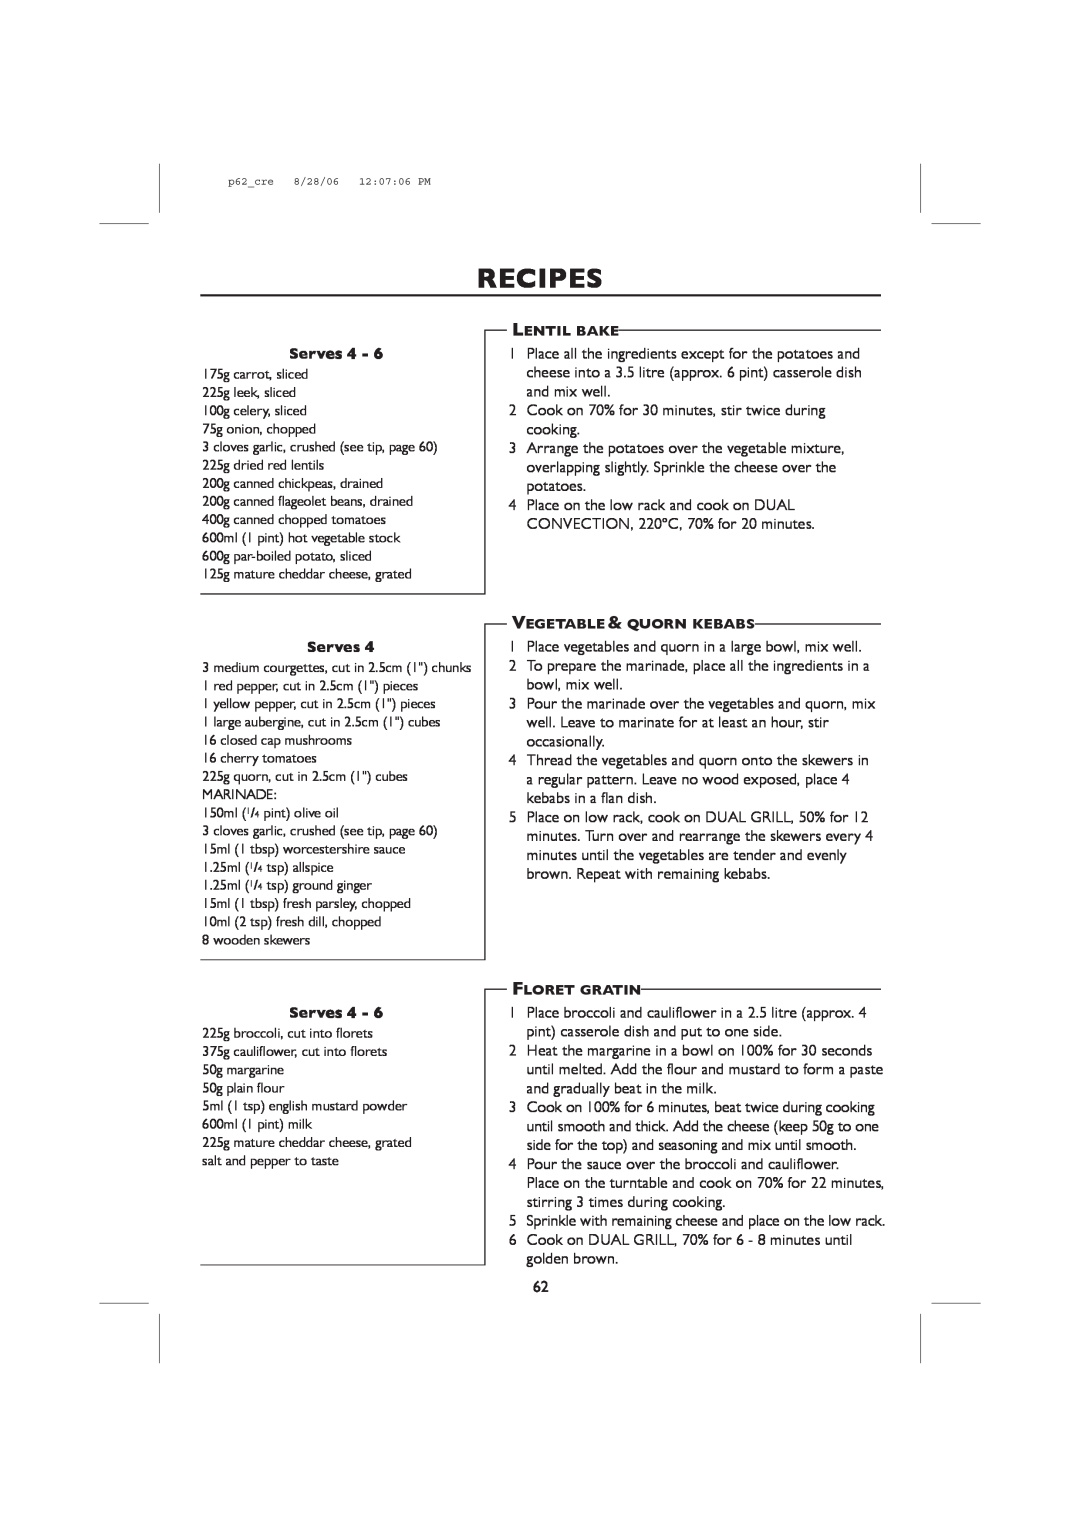 Sharp R-98STM-A, R-959M operation manual Recipes, Serves, Lentil Bake, Vegetable & Quorn Kebabs, Floret Gratin 